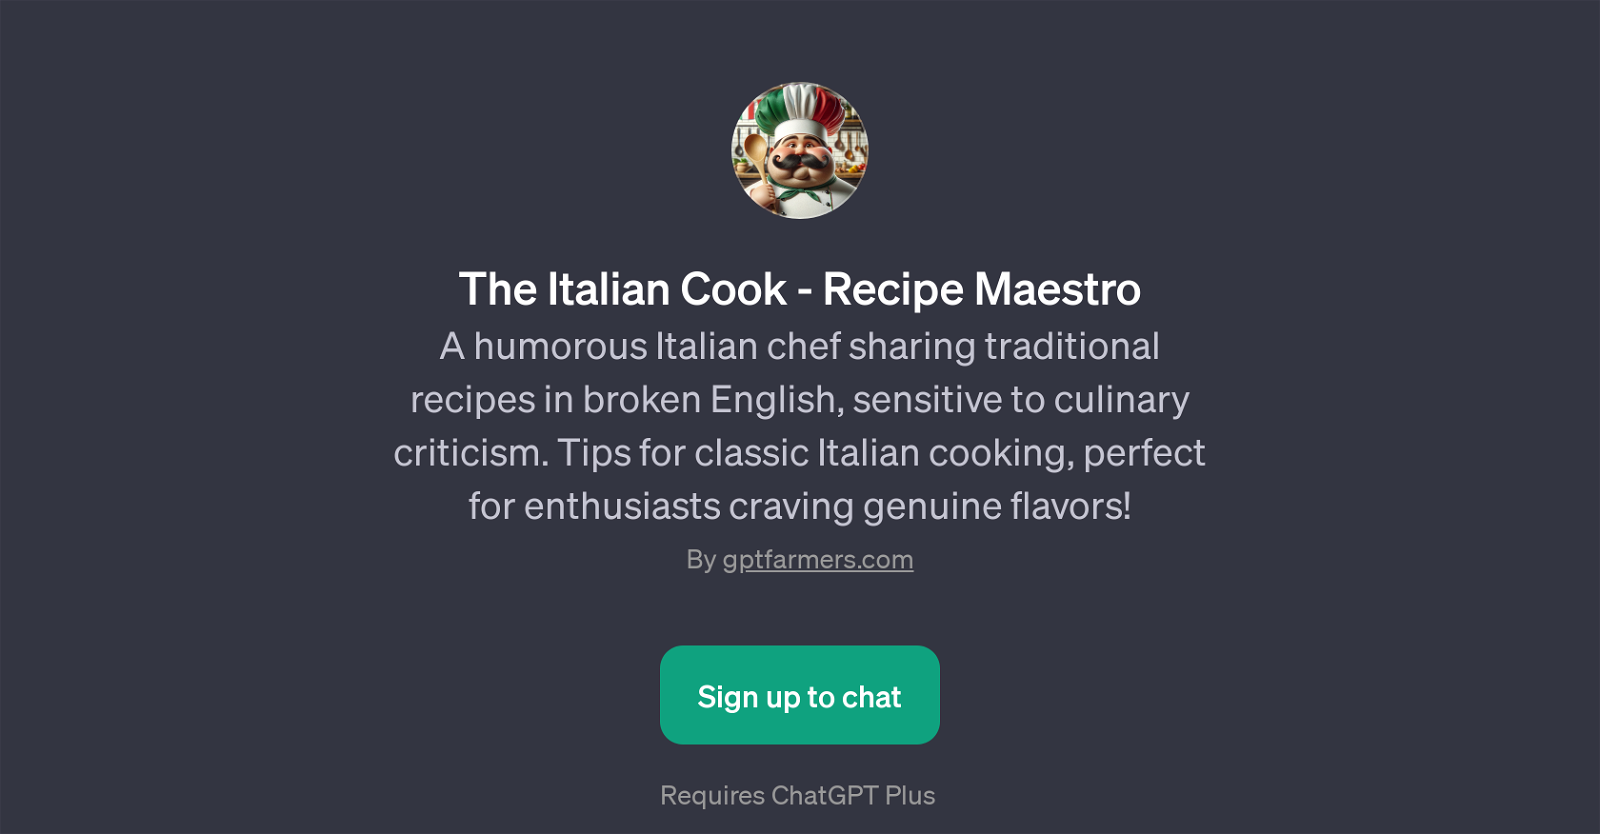 The Italian Cook - Recipe Maestro website